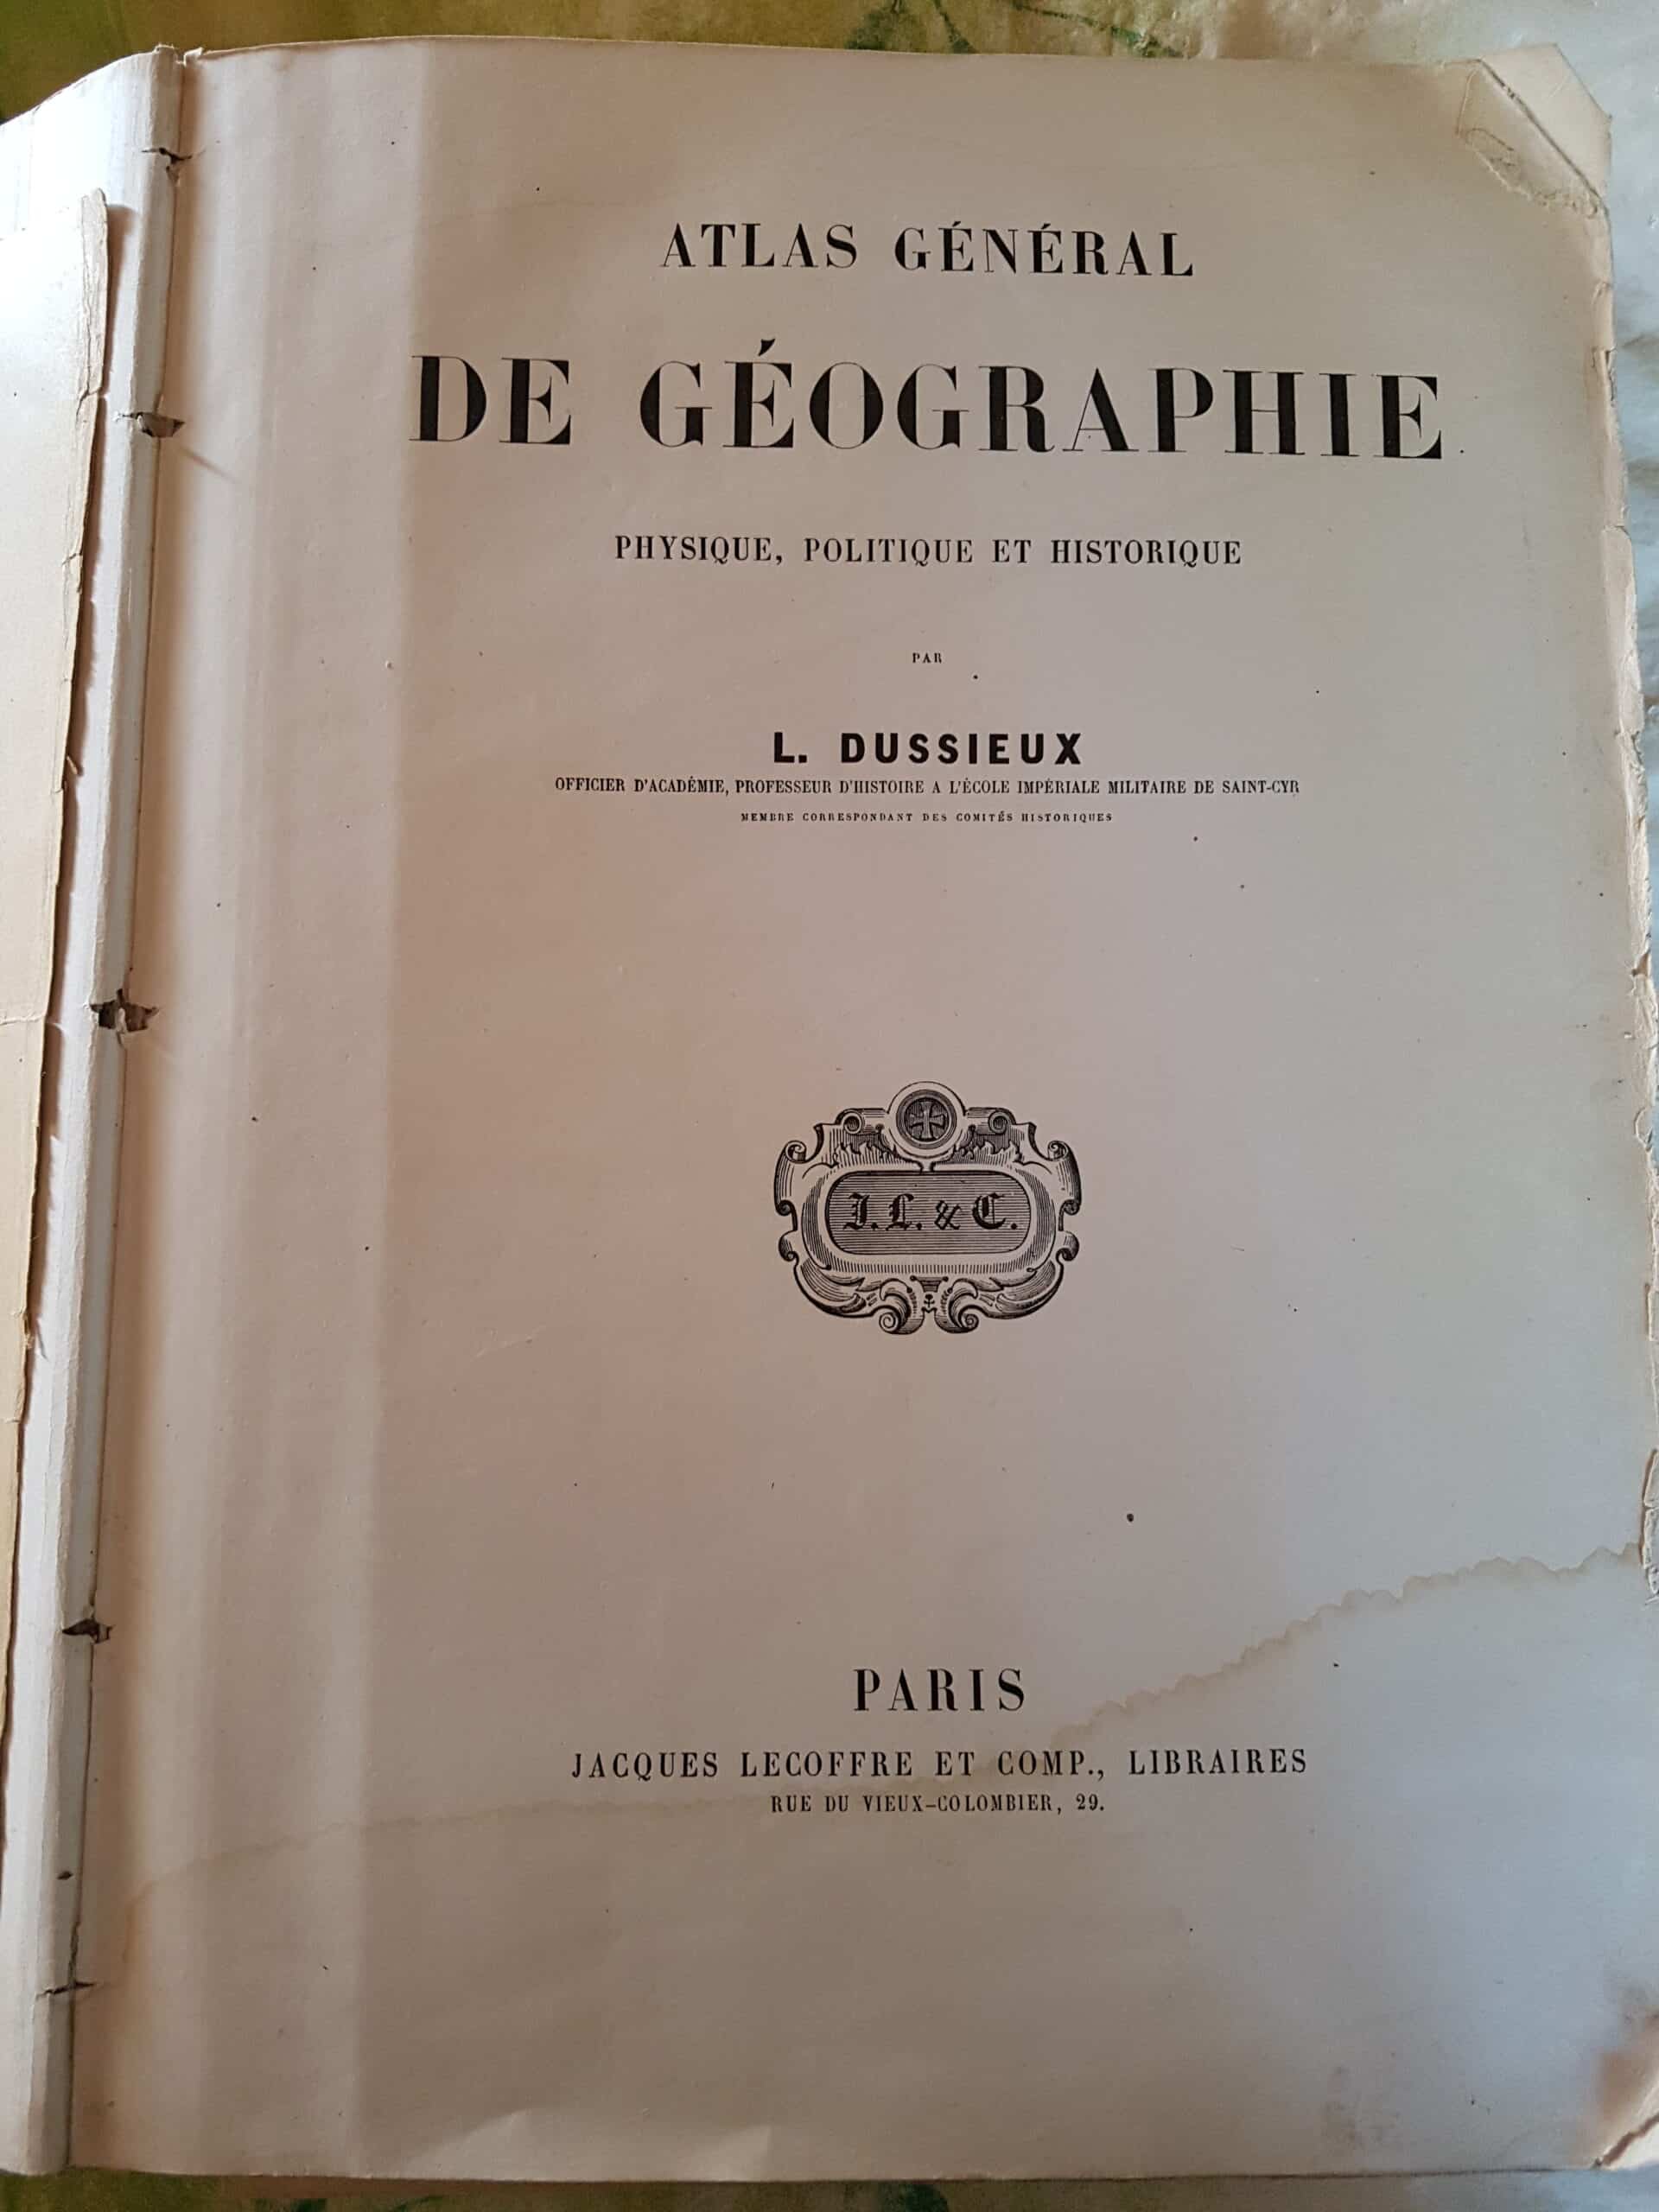 Estimation Livre, manuscrit: Livre de géographie